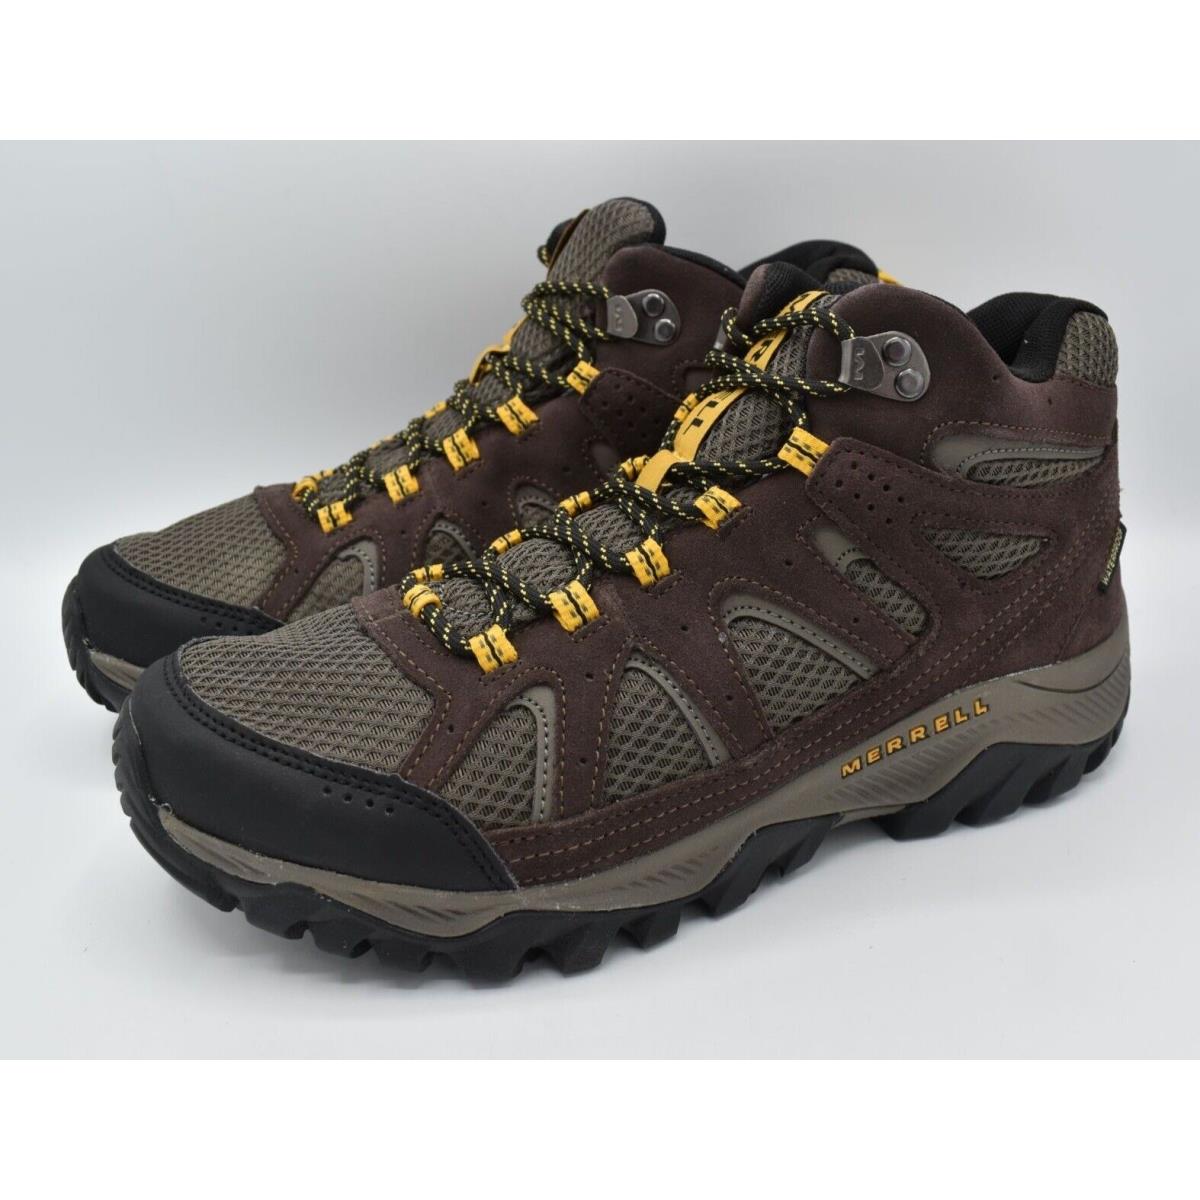 Merrell Men Size 14 Oakcreek Mid Waterproof Expresso Hiking Boots Shoes